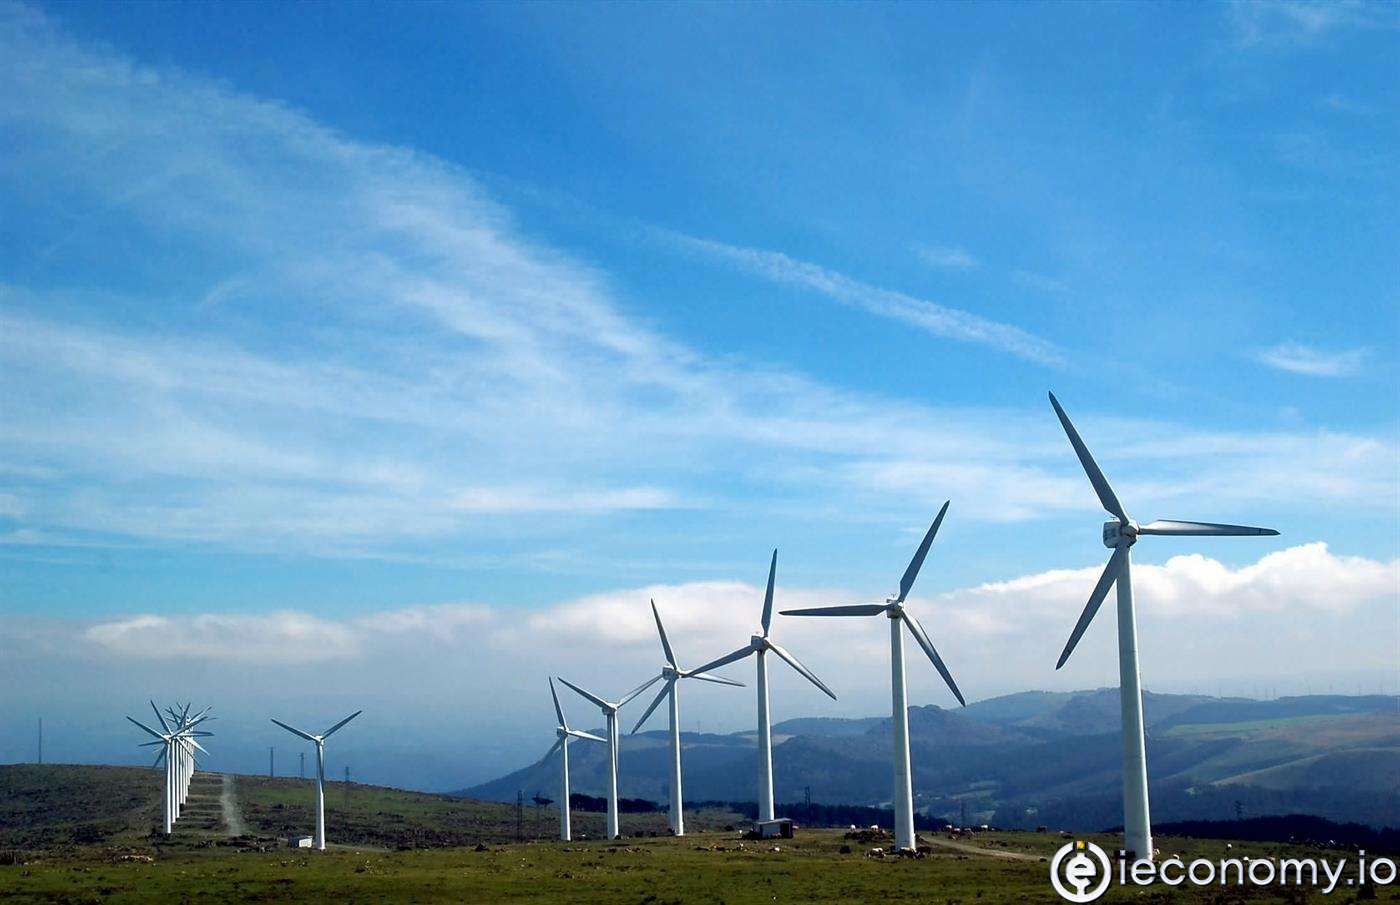 IEA has warned that progress towards clean energy is still very slow